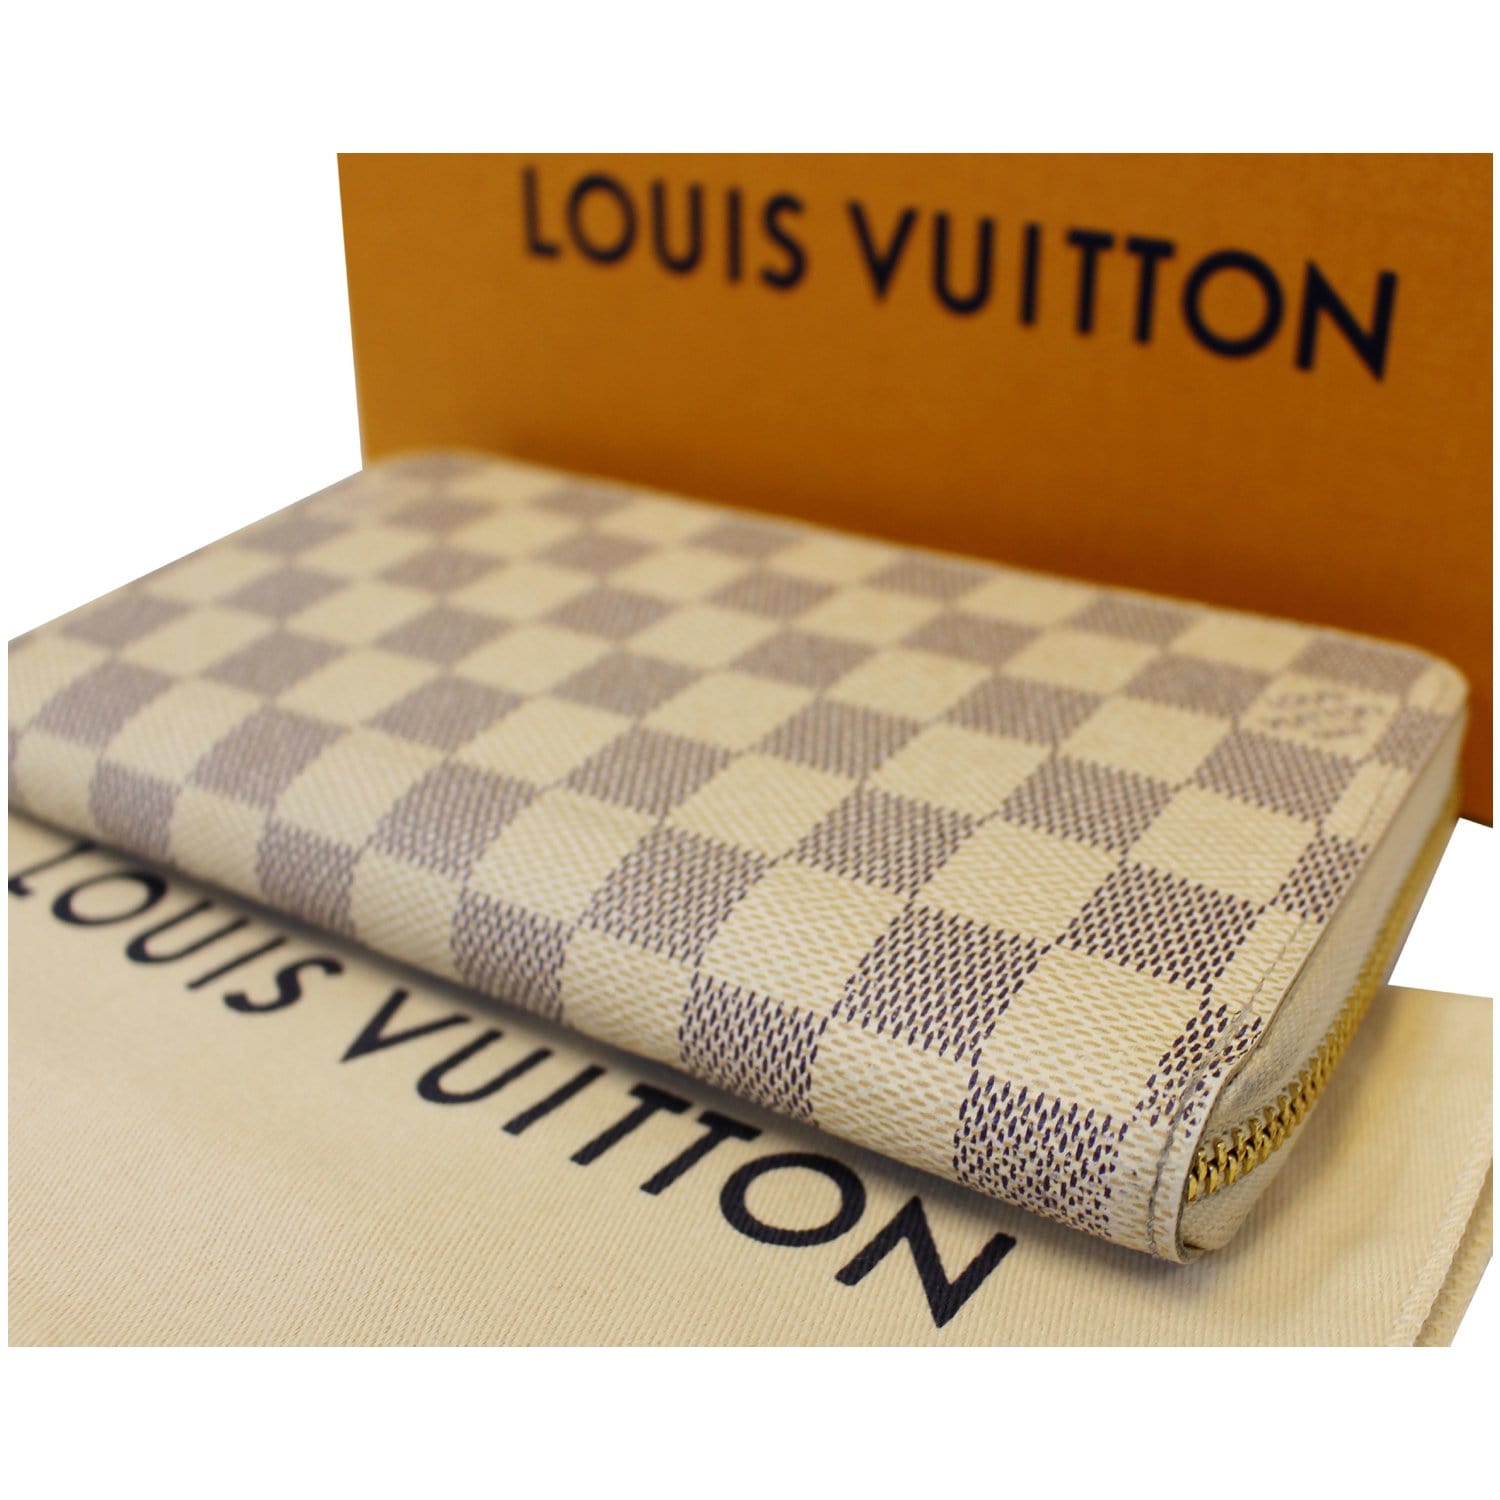 Authenticated Used LOUIS VUITTON Louis Vuitton Long Wallet Damier Azur Zippy  N60019 White Women's Men's 